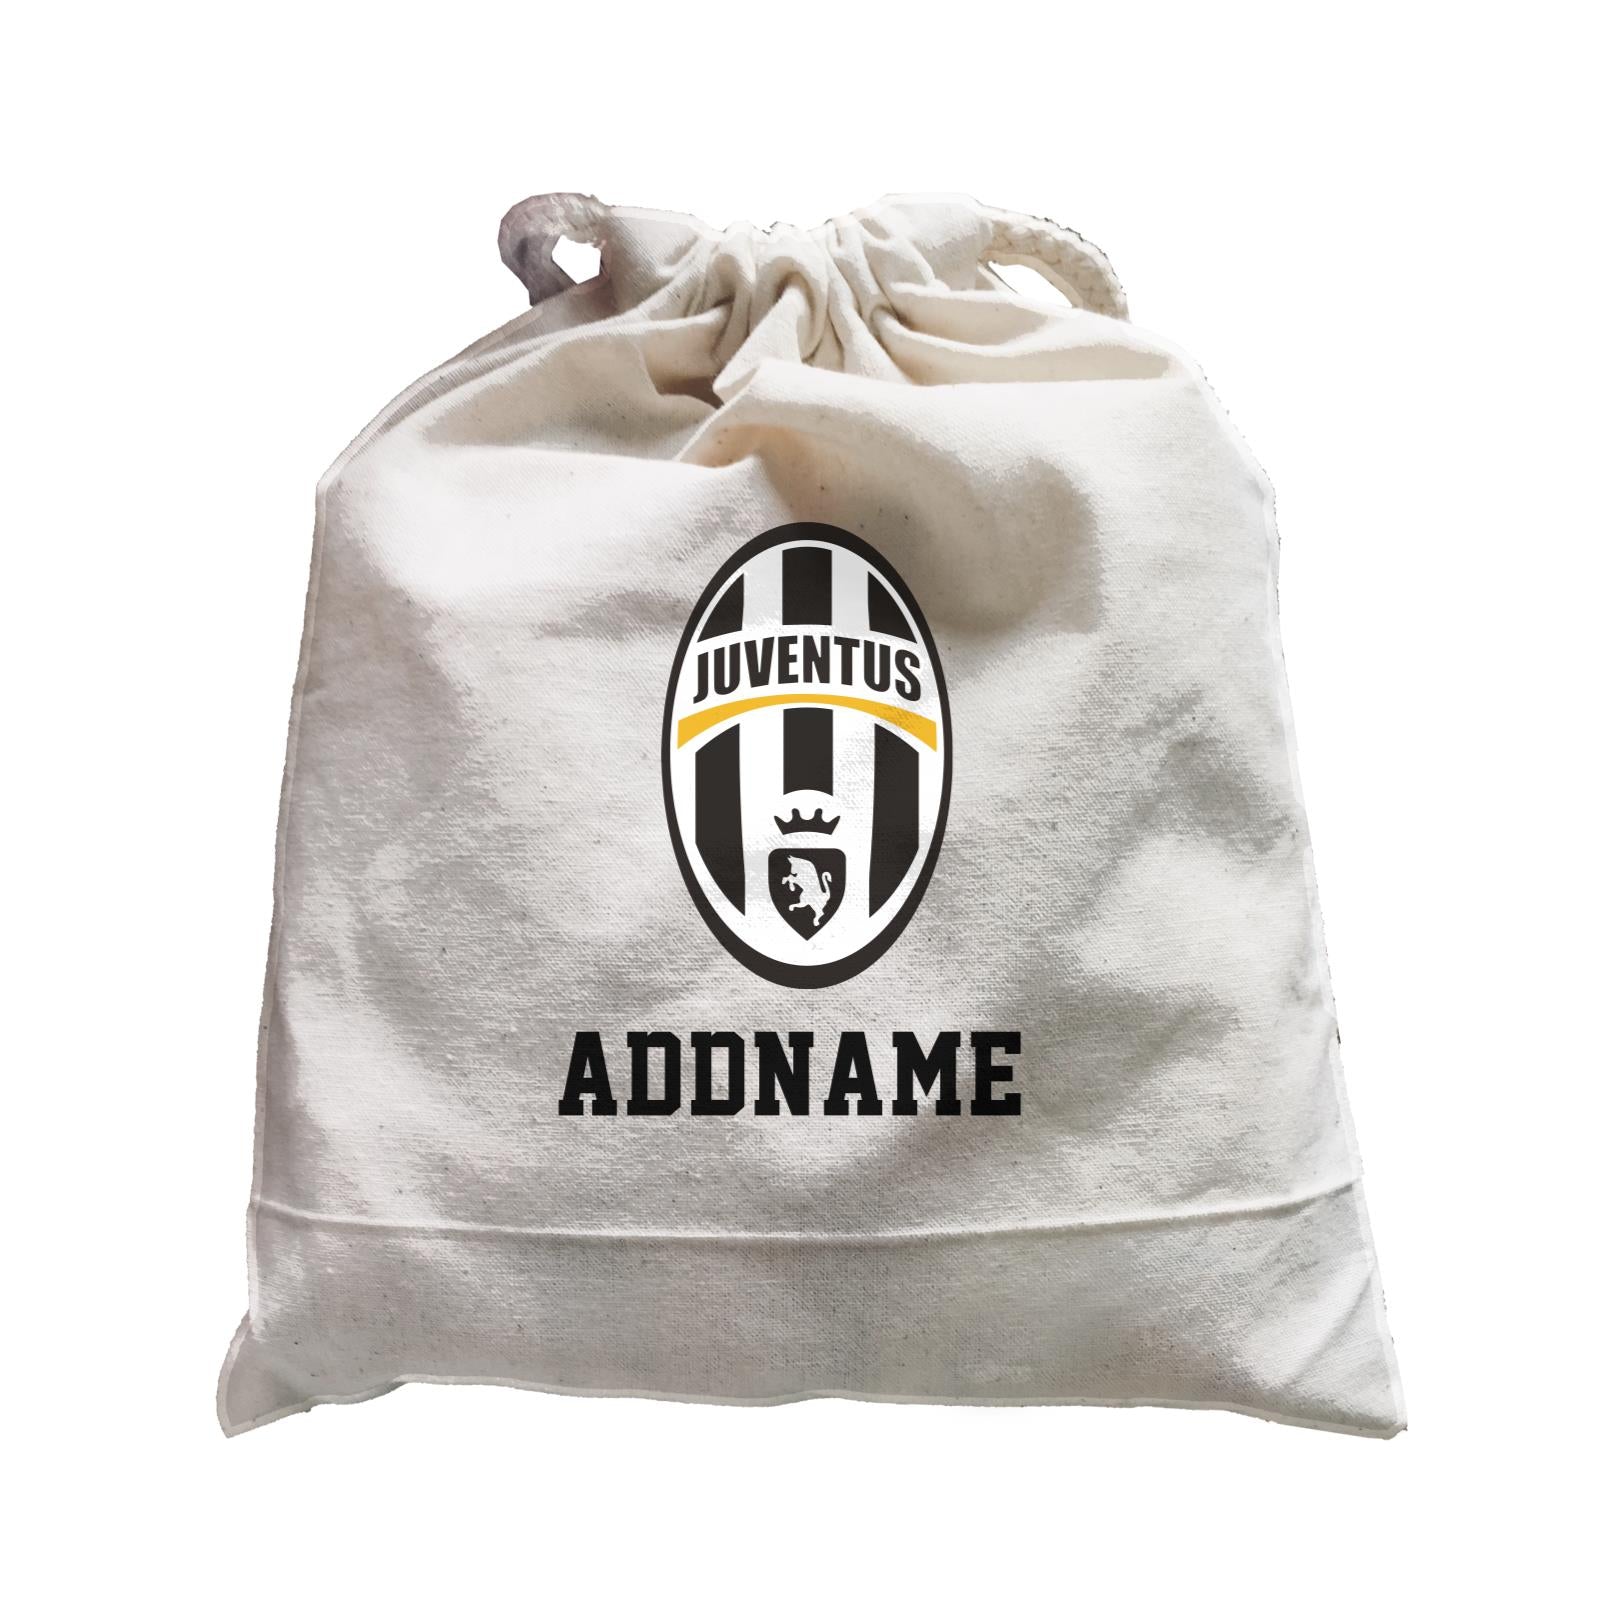 Juventus Football Logo Addname Satchel